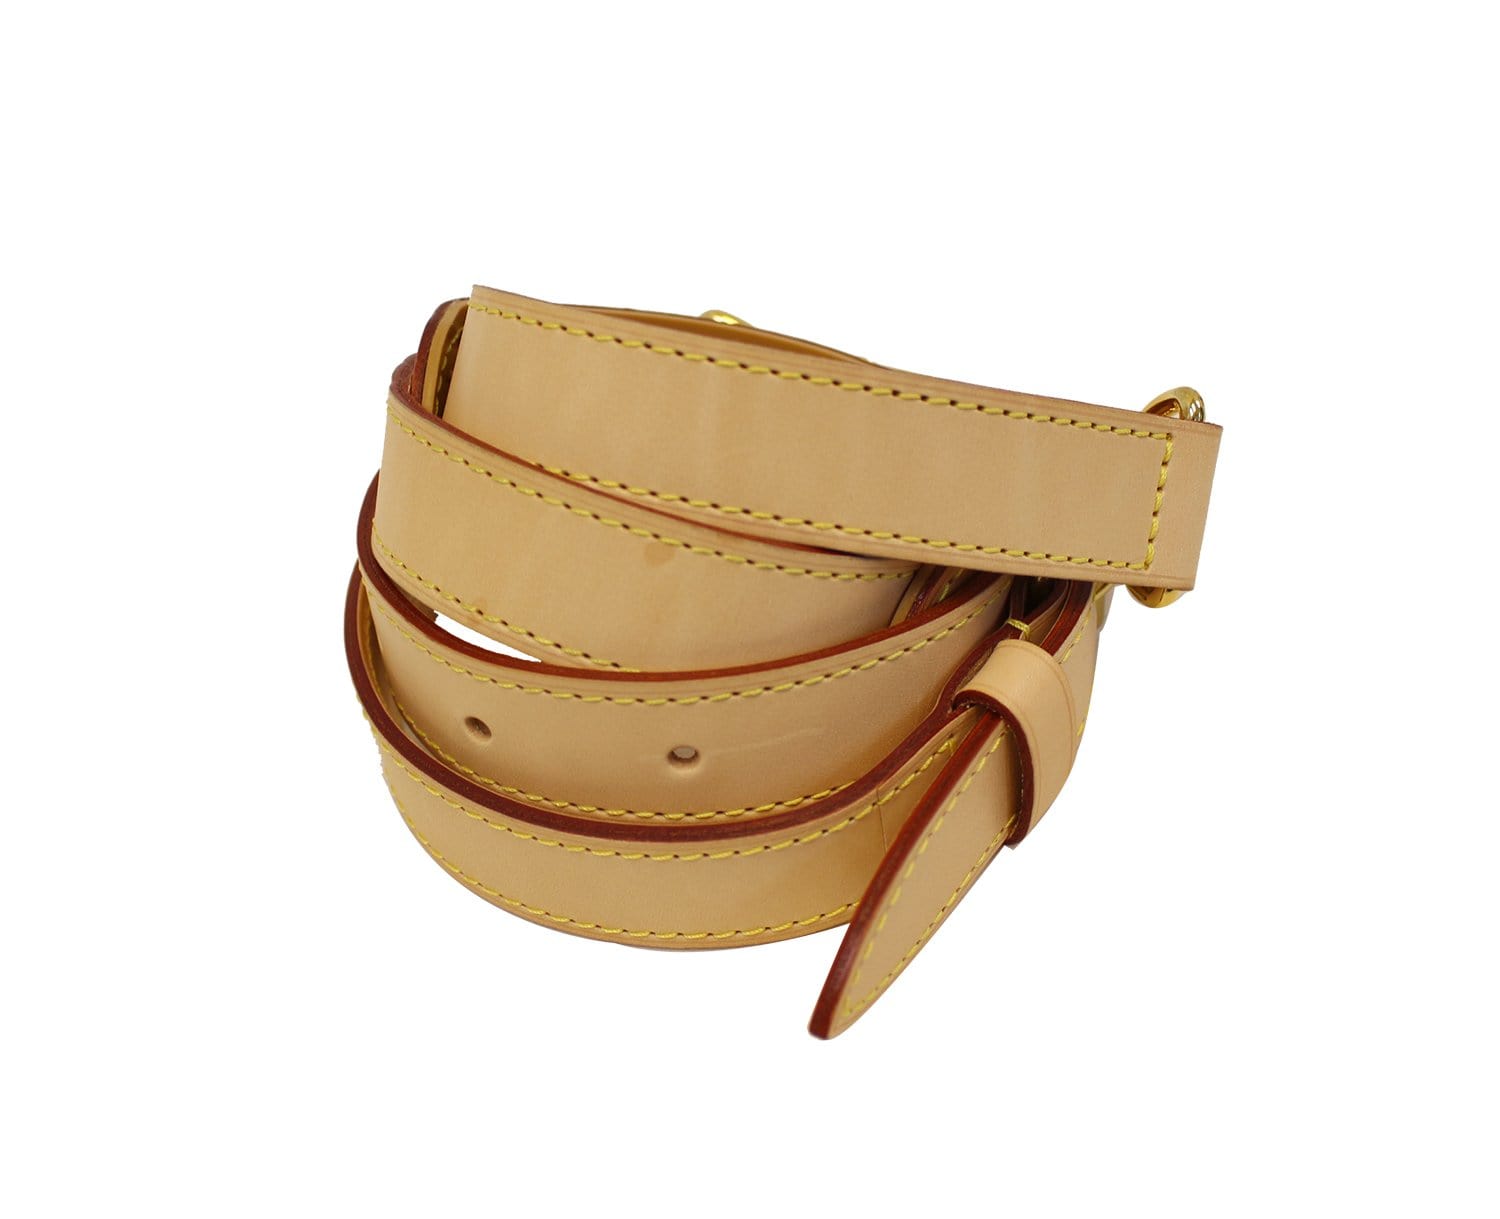 Louis-Vuitton-Leather-Shoulder-Strap-Beige-120cm-J00145